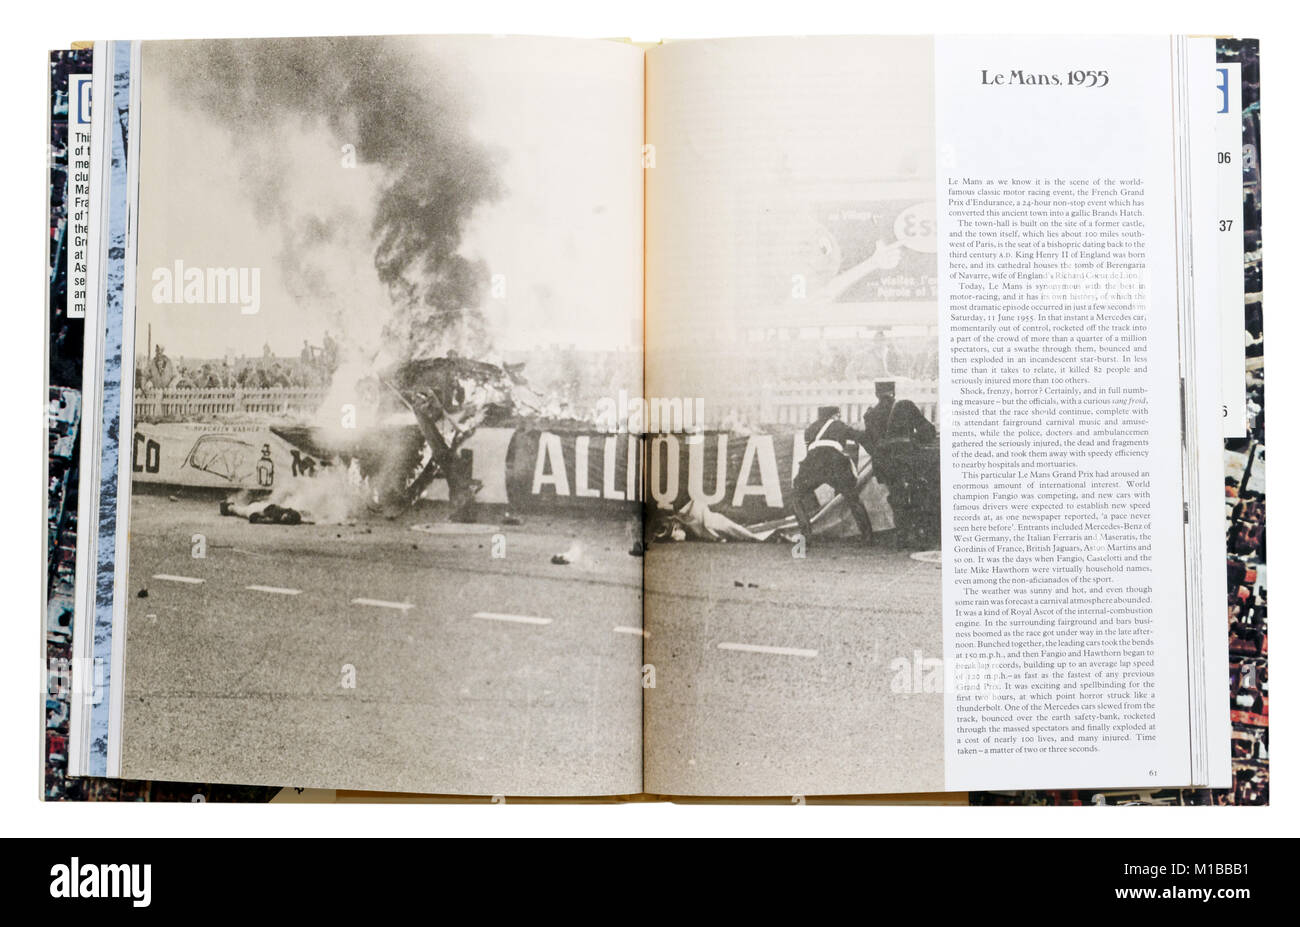 Un livre de catastrophes naturelles ouvert à la page à propos de l'accident du Mans 1955 Banque D'Images